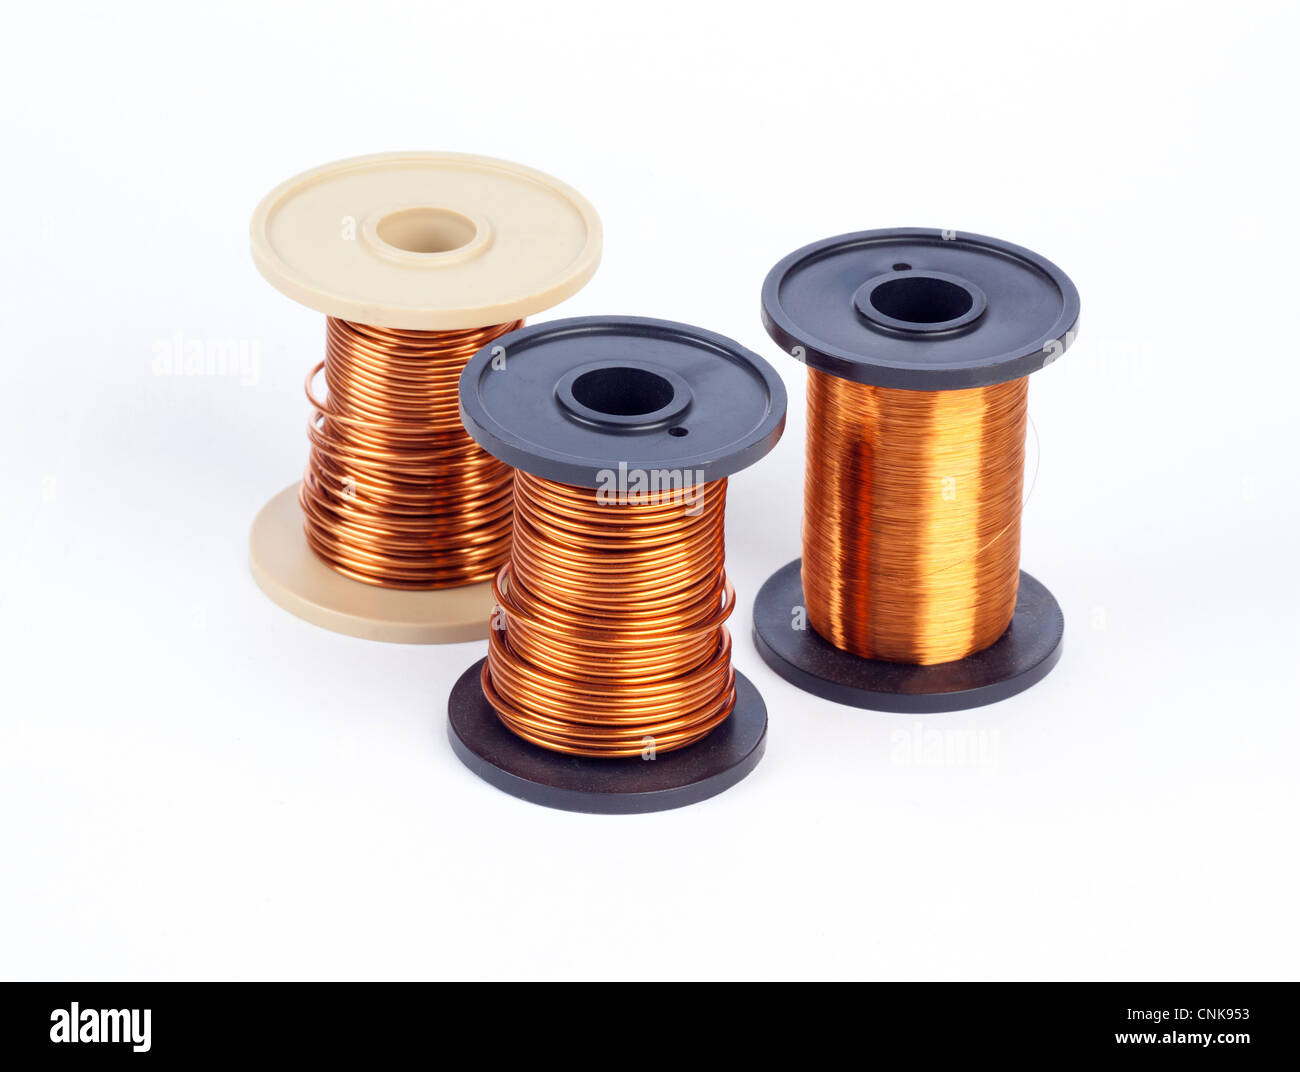 copper metal wire Stock Photo